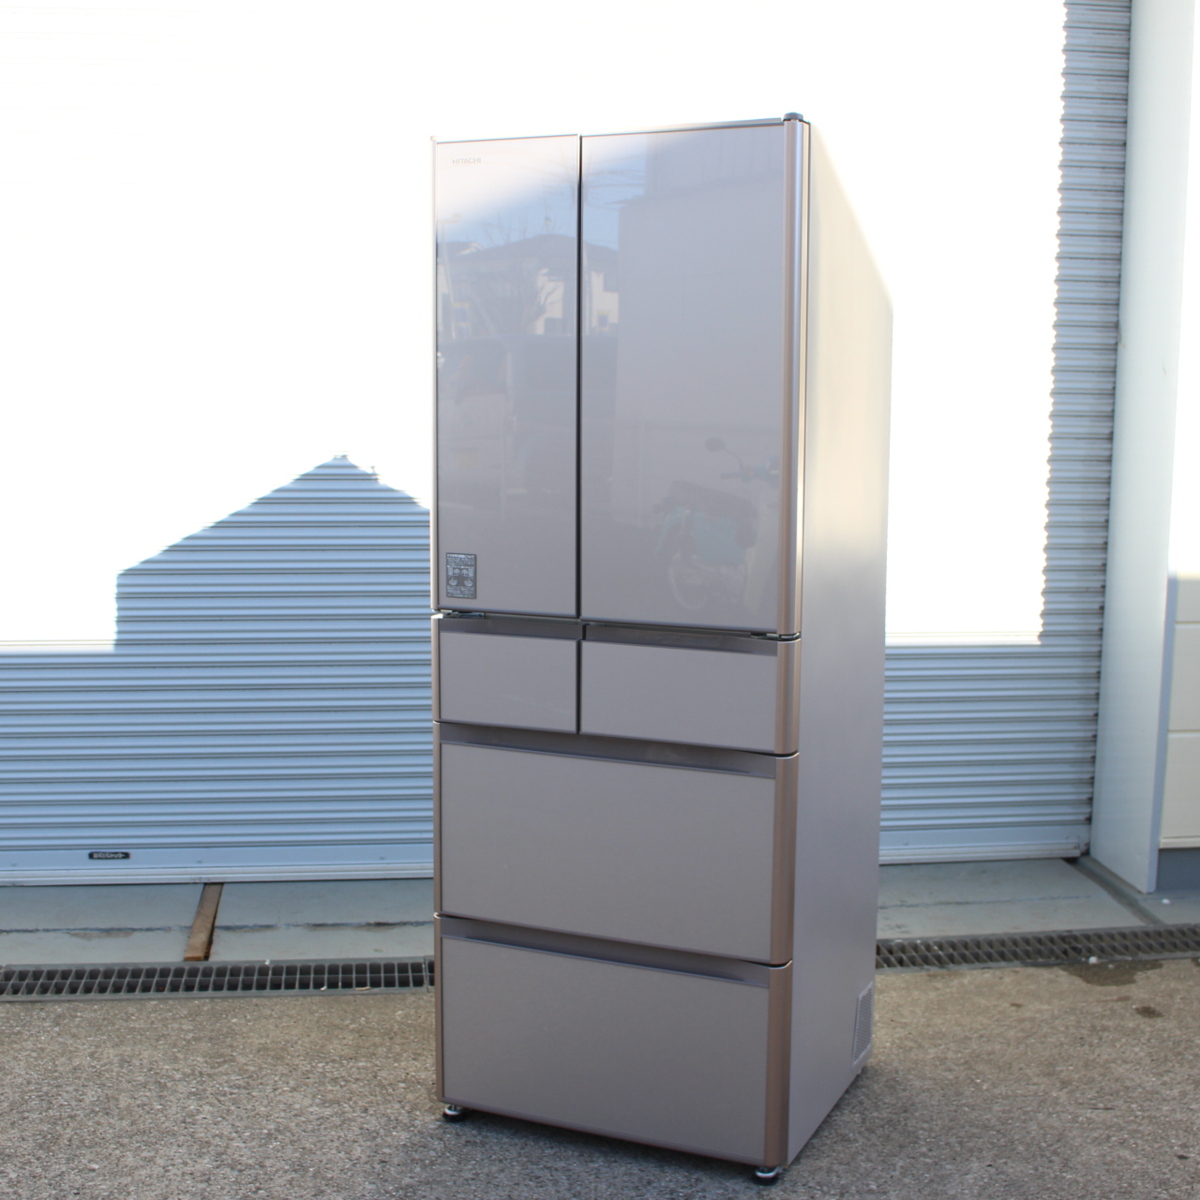 日立 ノンフロン冷凍冷蔵庫 R-XG4800H 6ドア 475L 2018年製 観音開き